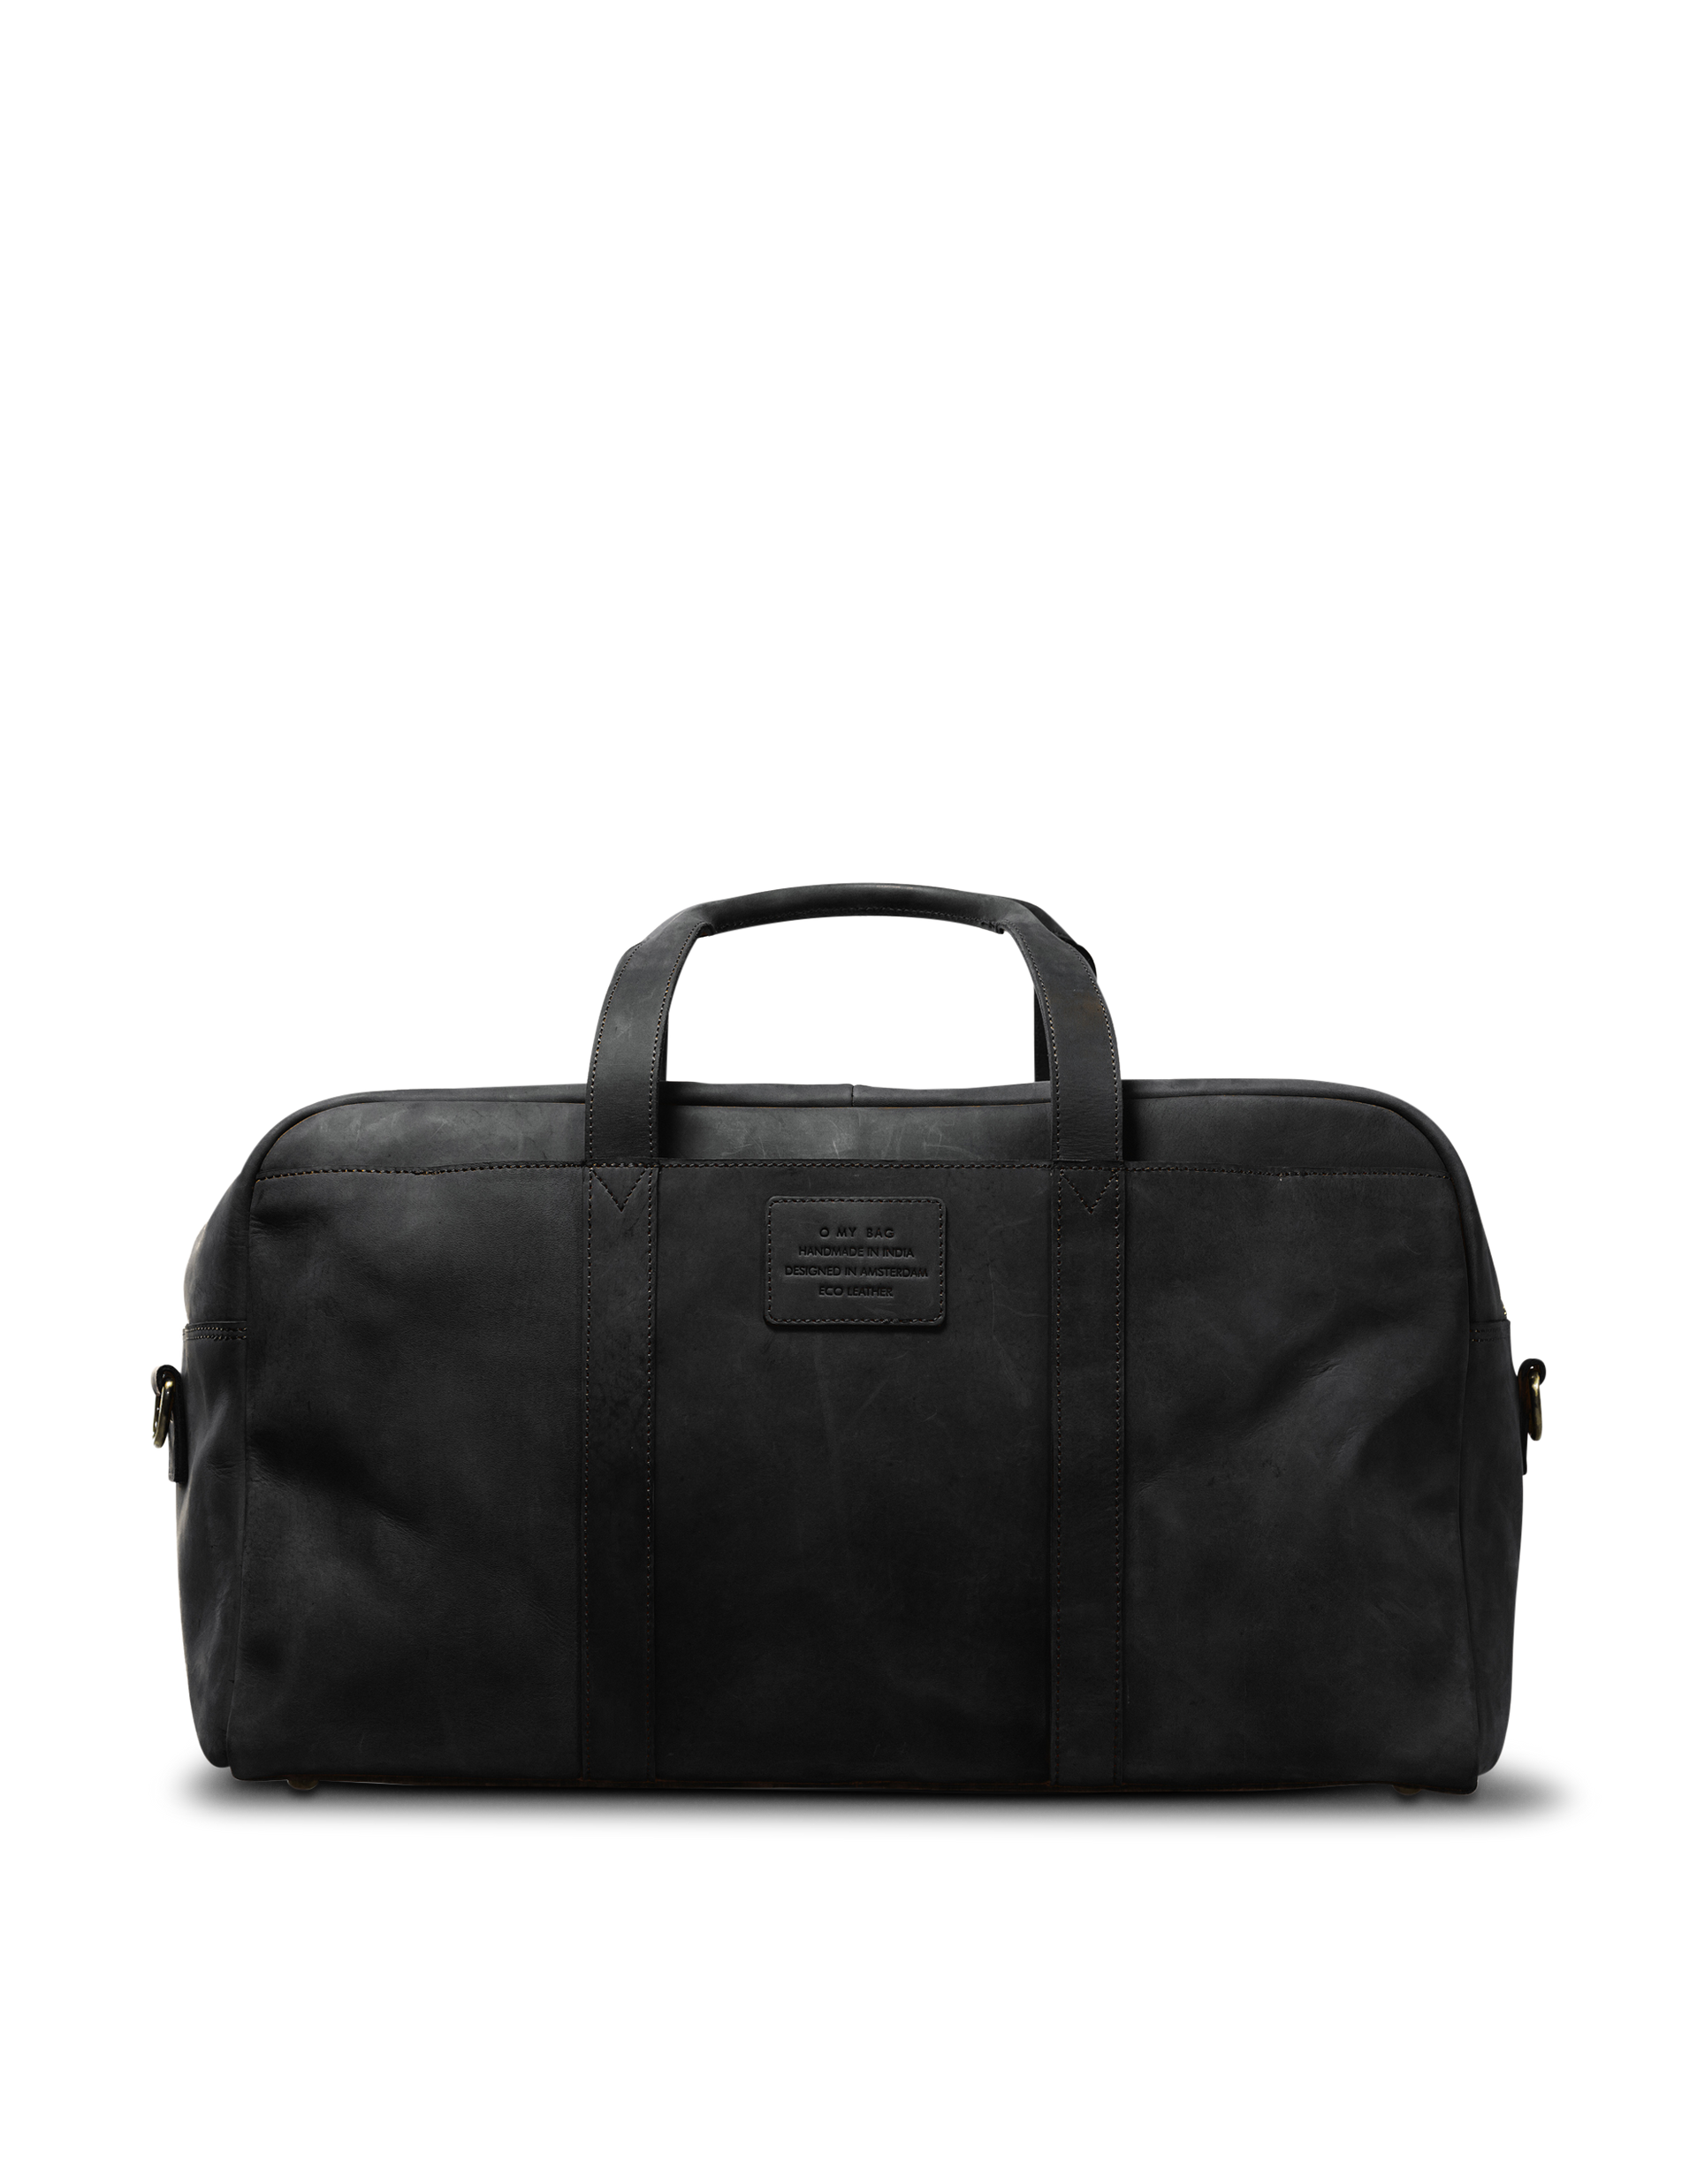 Otis Weekender Black Hunter Leather. Large travel bag for men. Front product image.